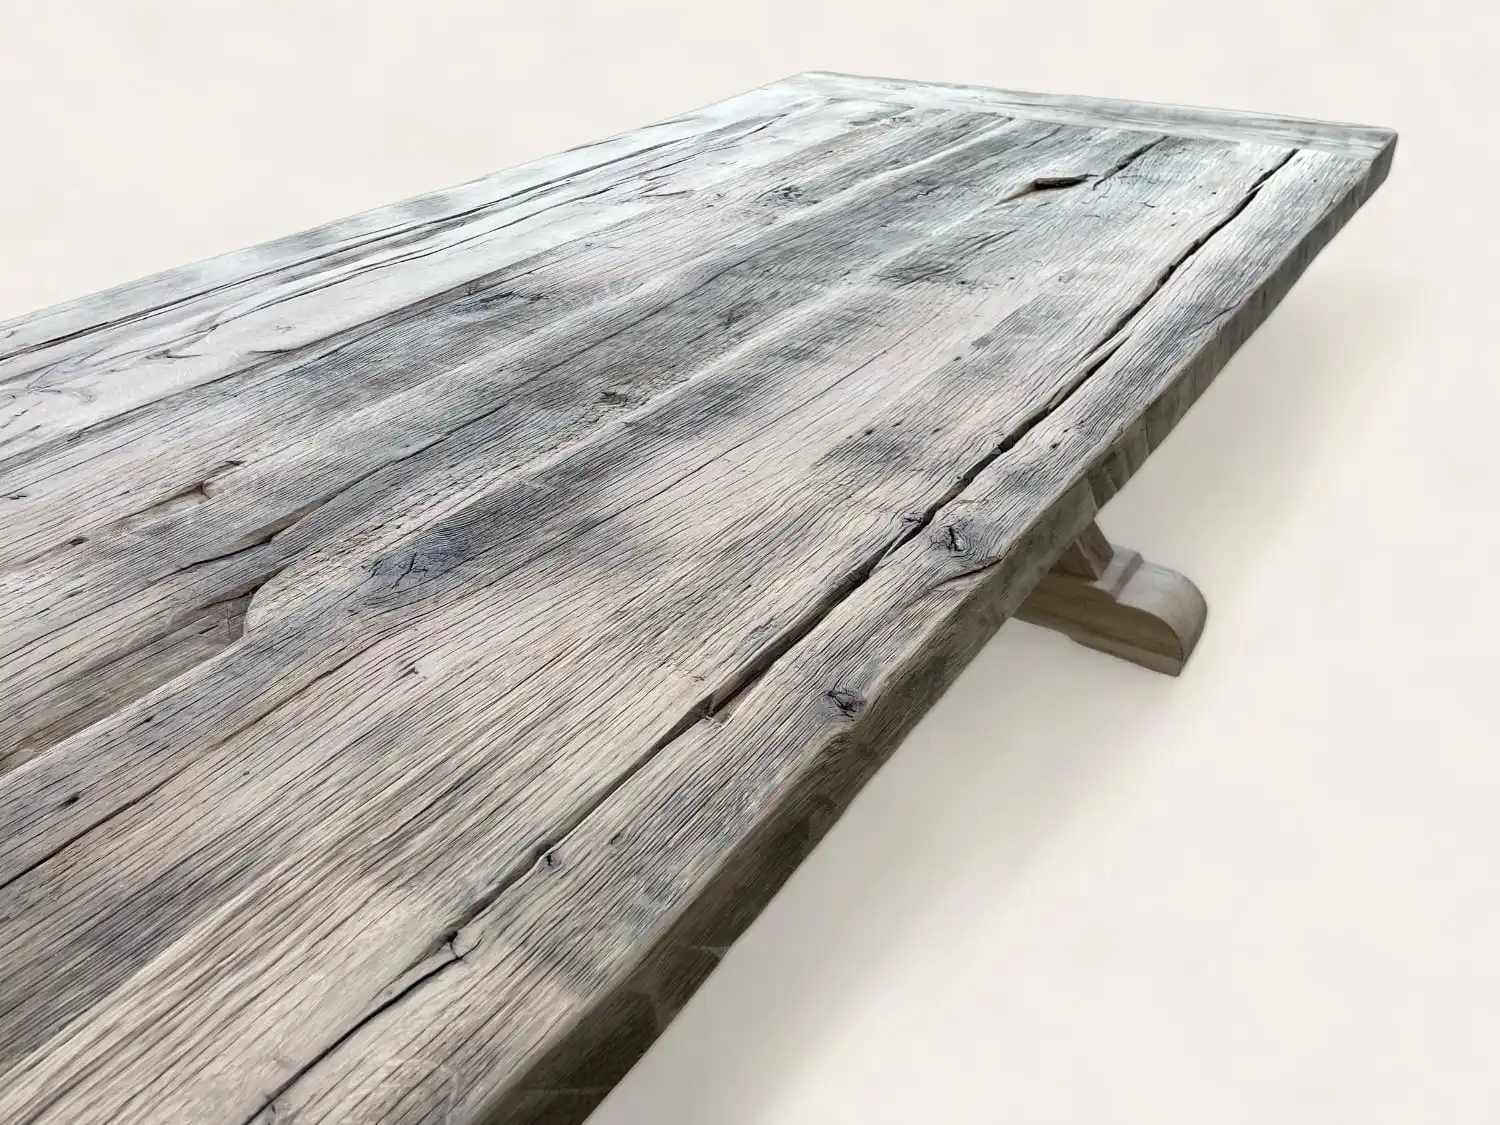 Vue rapprochée d'une table de ferme rustique avec une surface patinée et des motifs de grain de bois visibles.